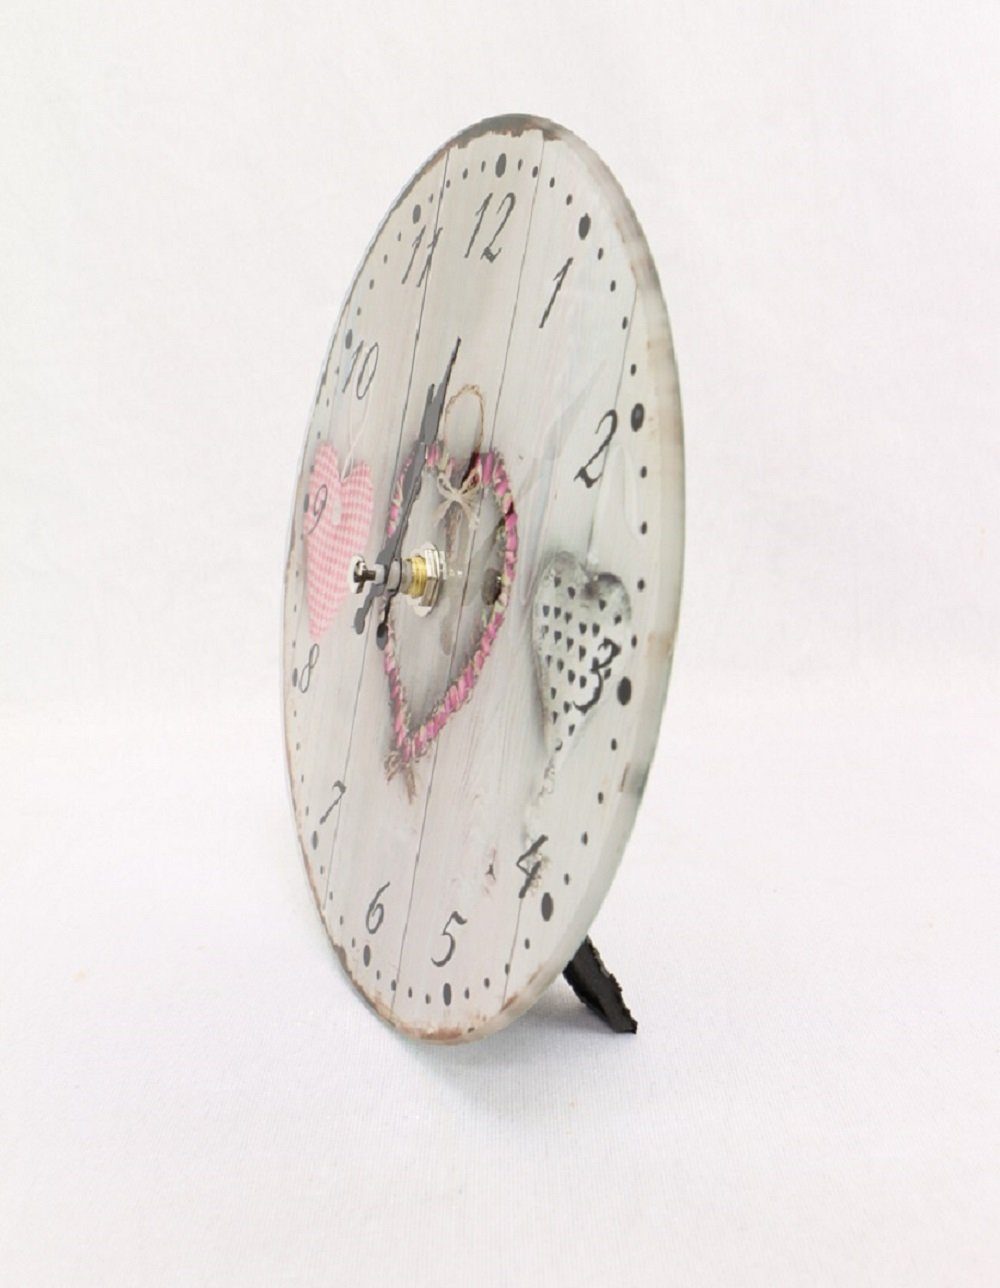 Linoows Uhr Wanduhr mit Herzen, 17 Glas aus cm Tischuhr